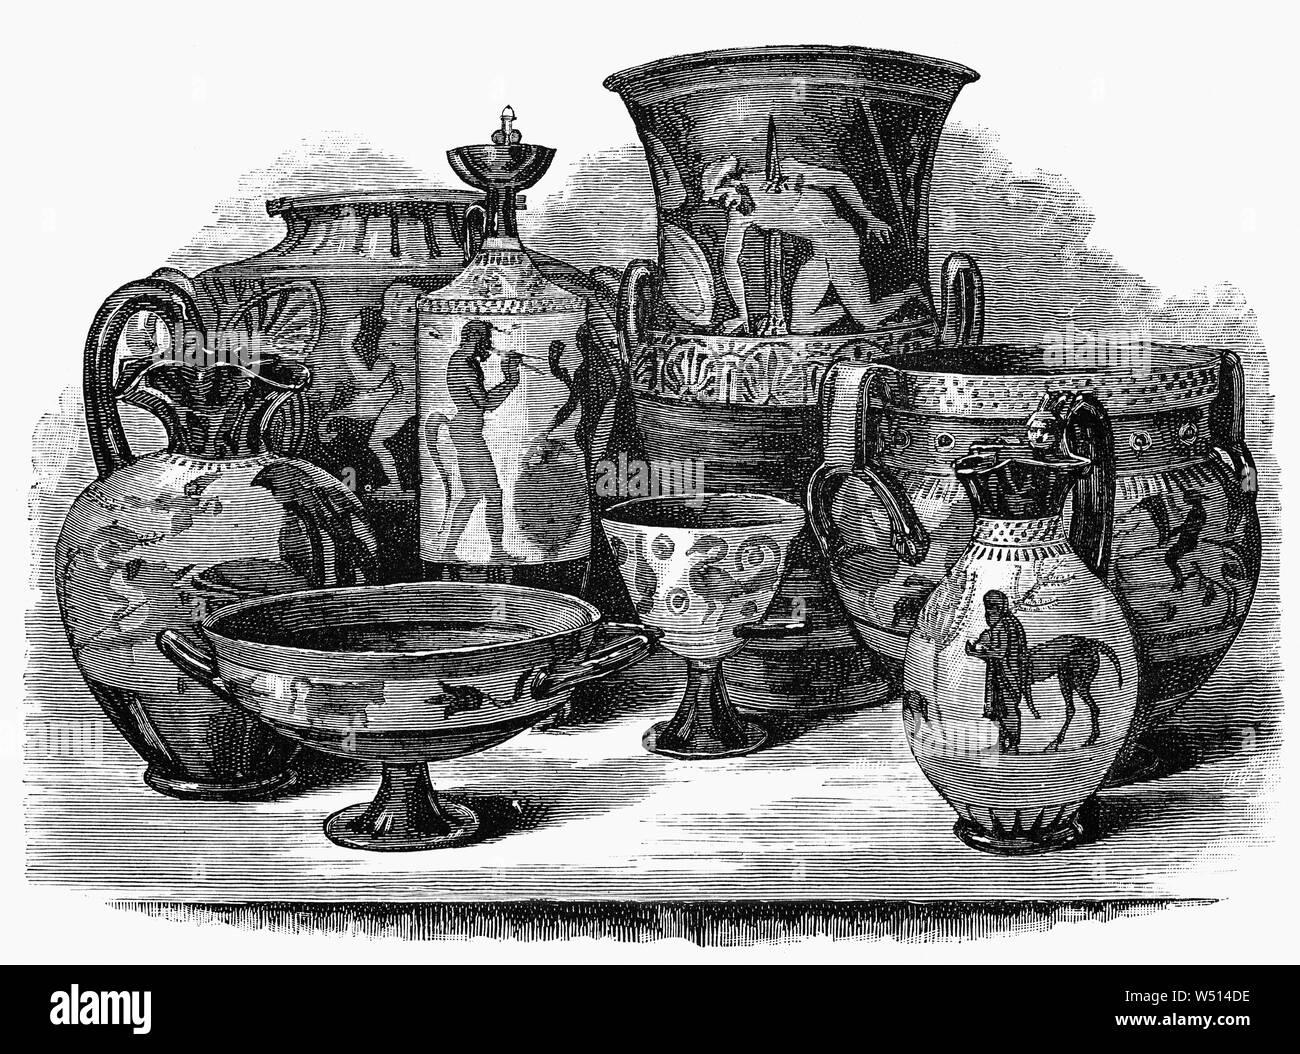 Vasi etruschi immagini e fotografie stock ad alta risoluzione - Alamy